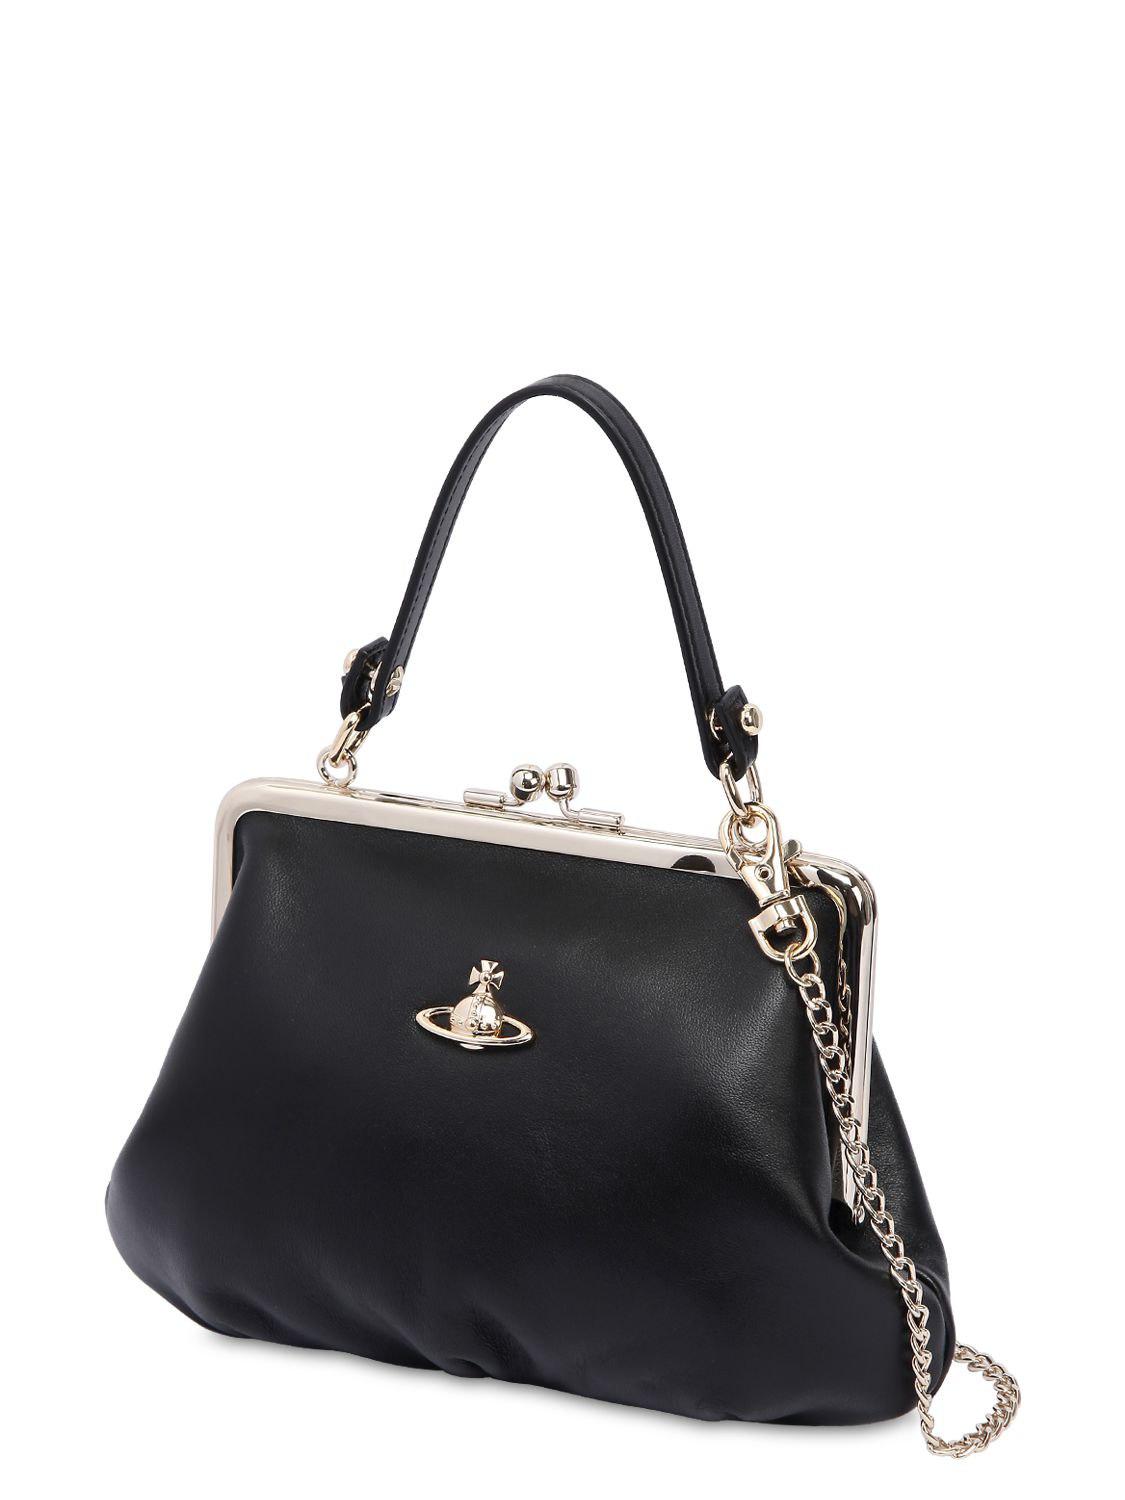 Vivienne Westwood Nappa Leather Shoulder Bag in Black - Lyst